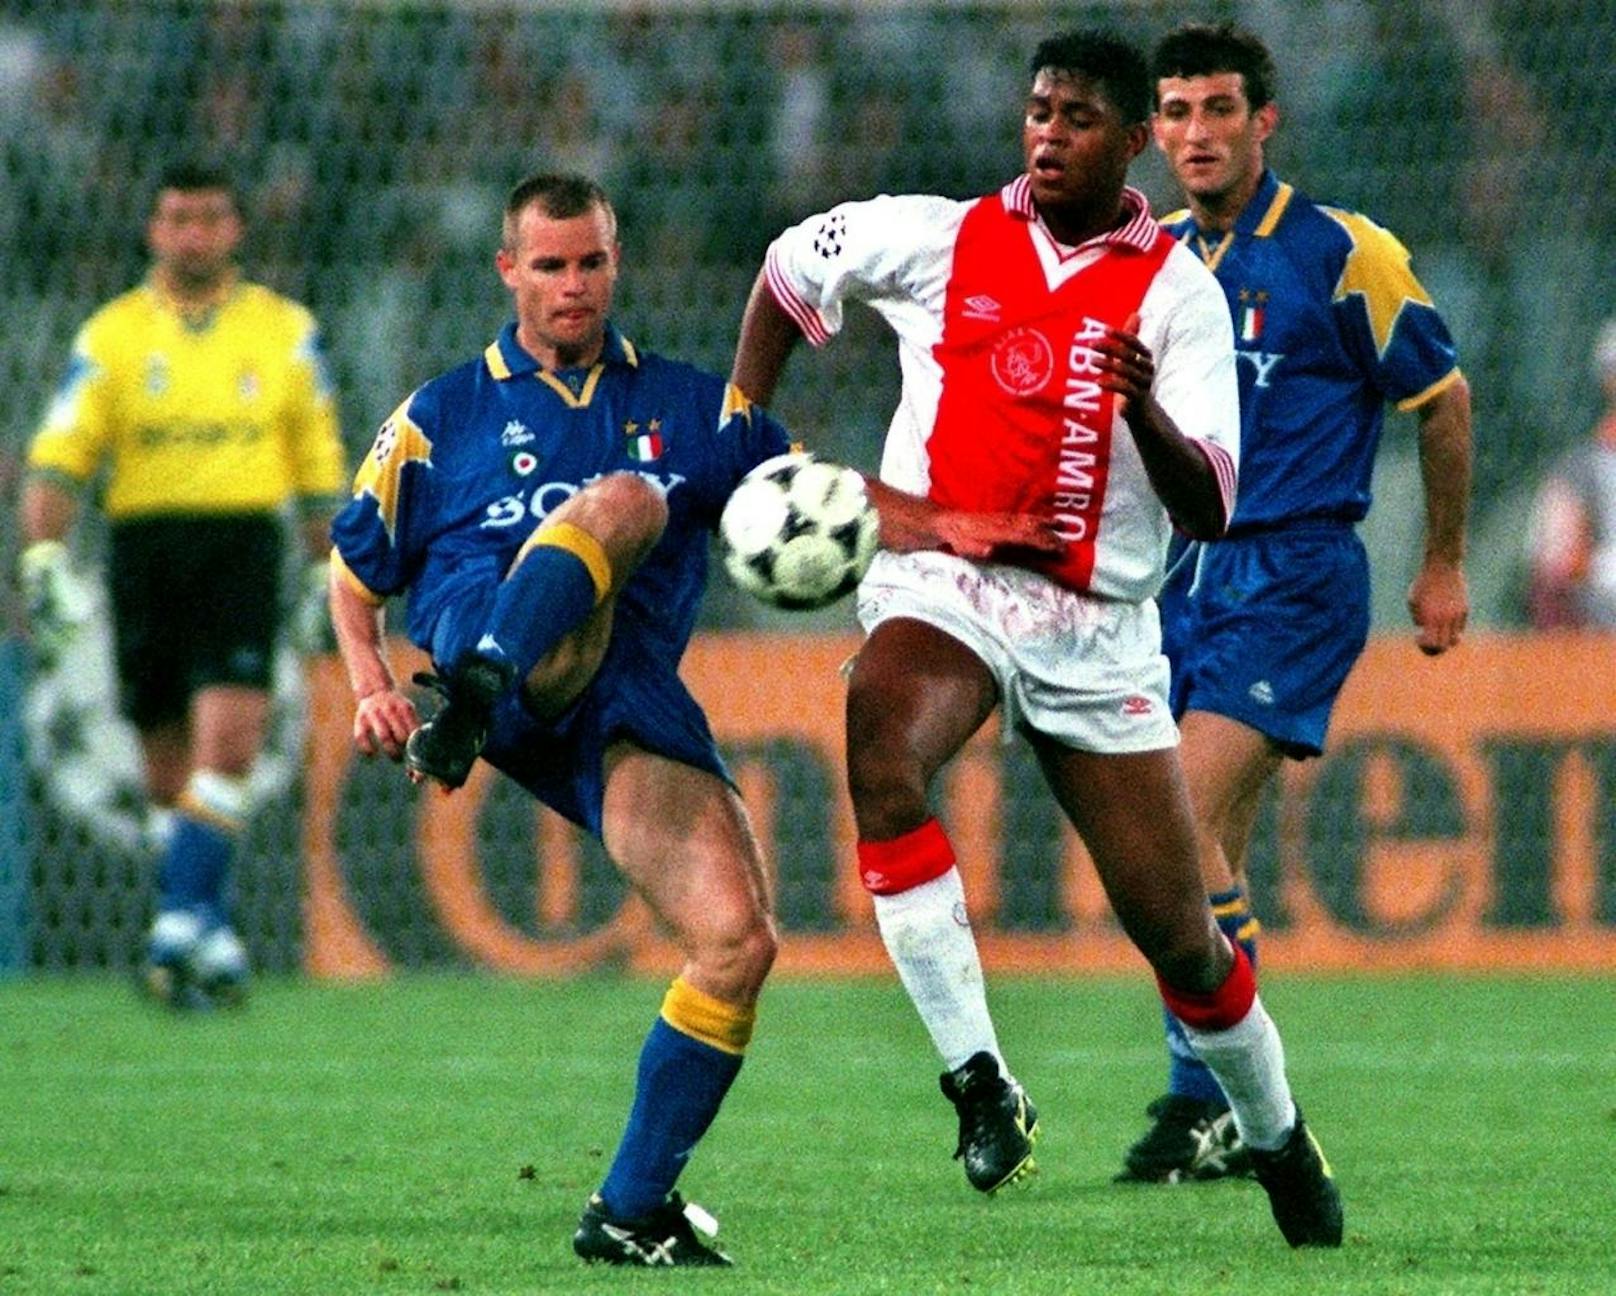 1996 schaffte es Titelverteidiger Ajax erneut ins Finale, das diesmal in Rom ausgetragen wurde. Gegner war Juventus Turin.